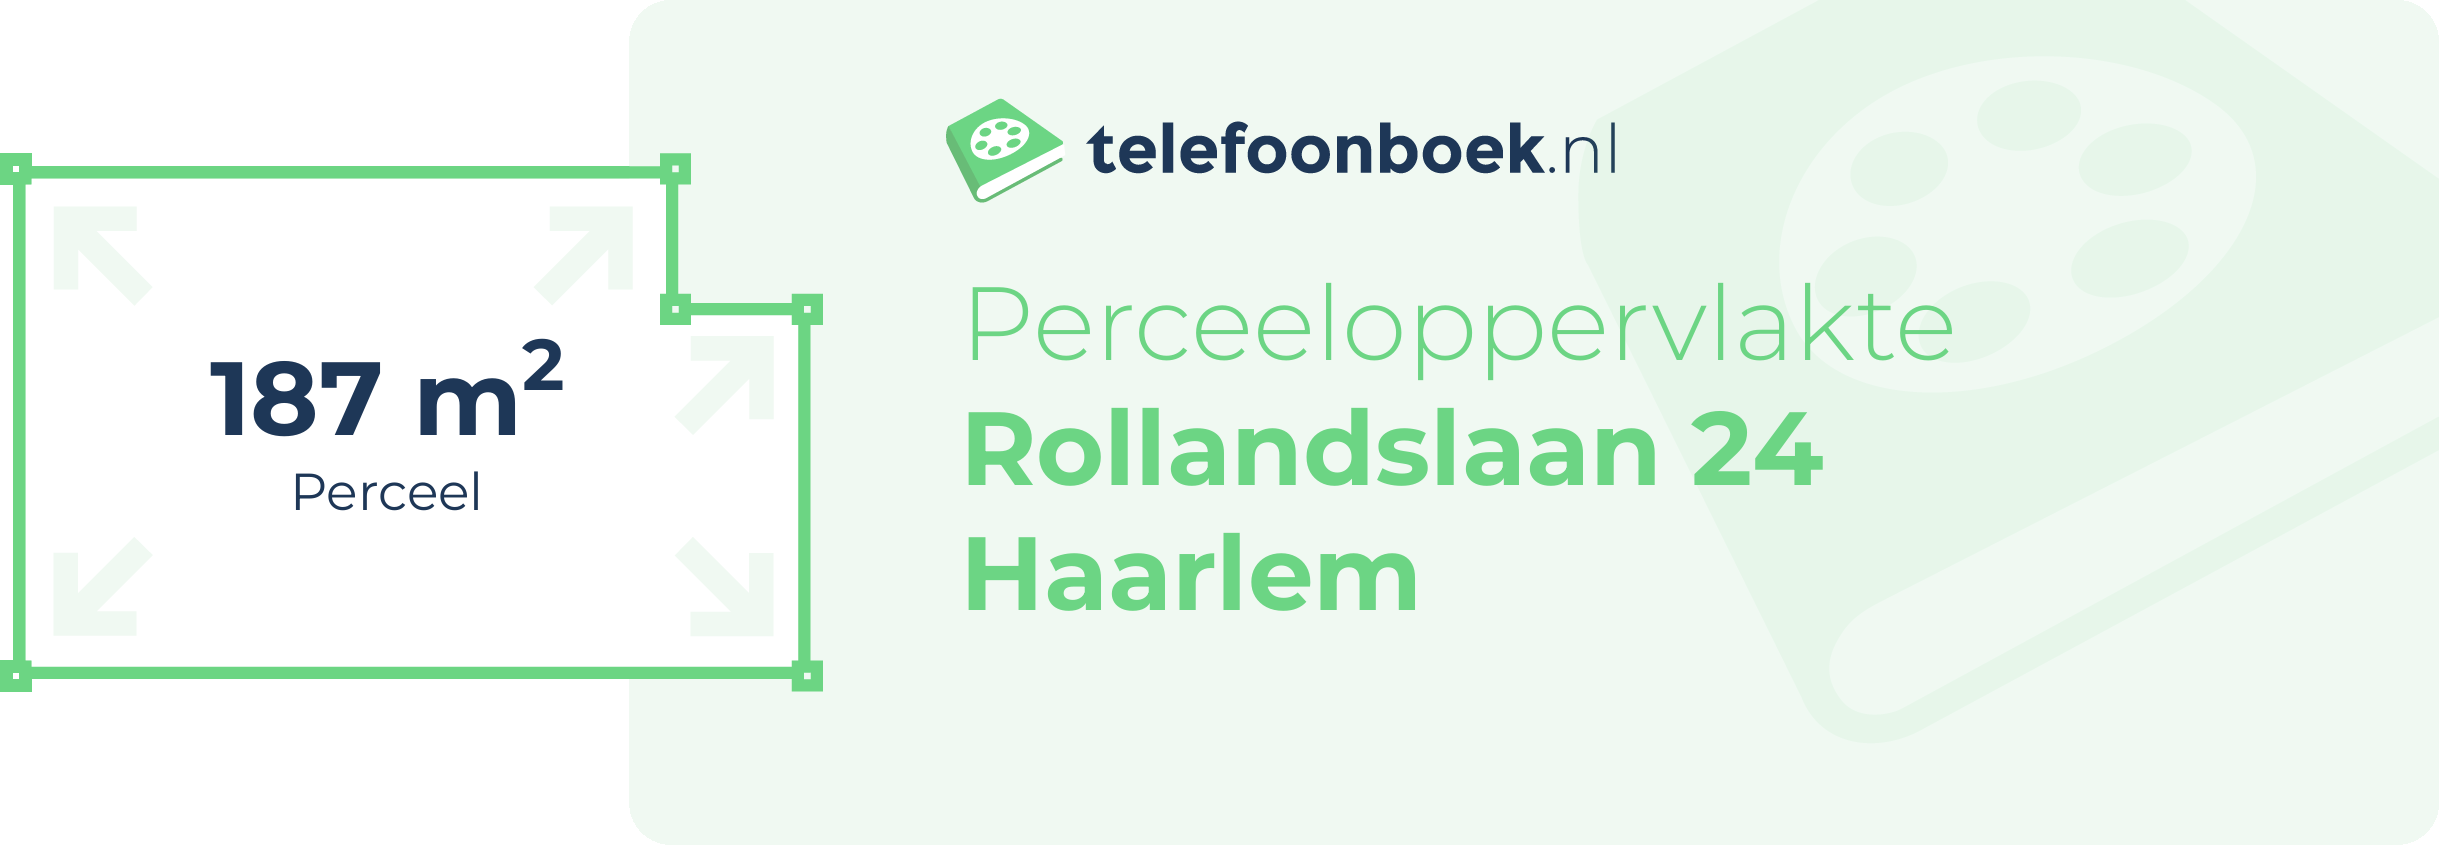 Perceeloppervlakte Rollandslaan 24 Haarlem